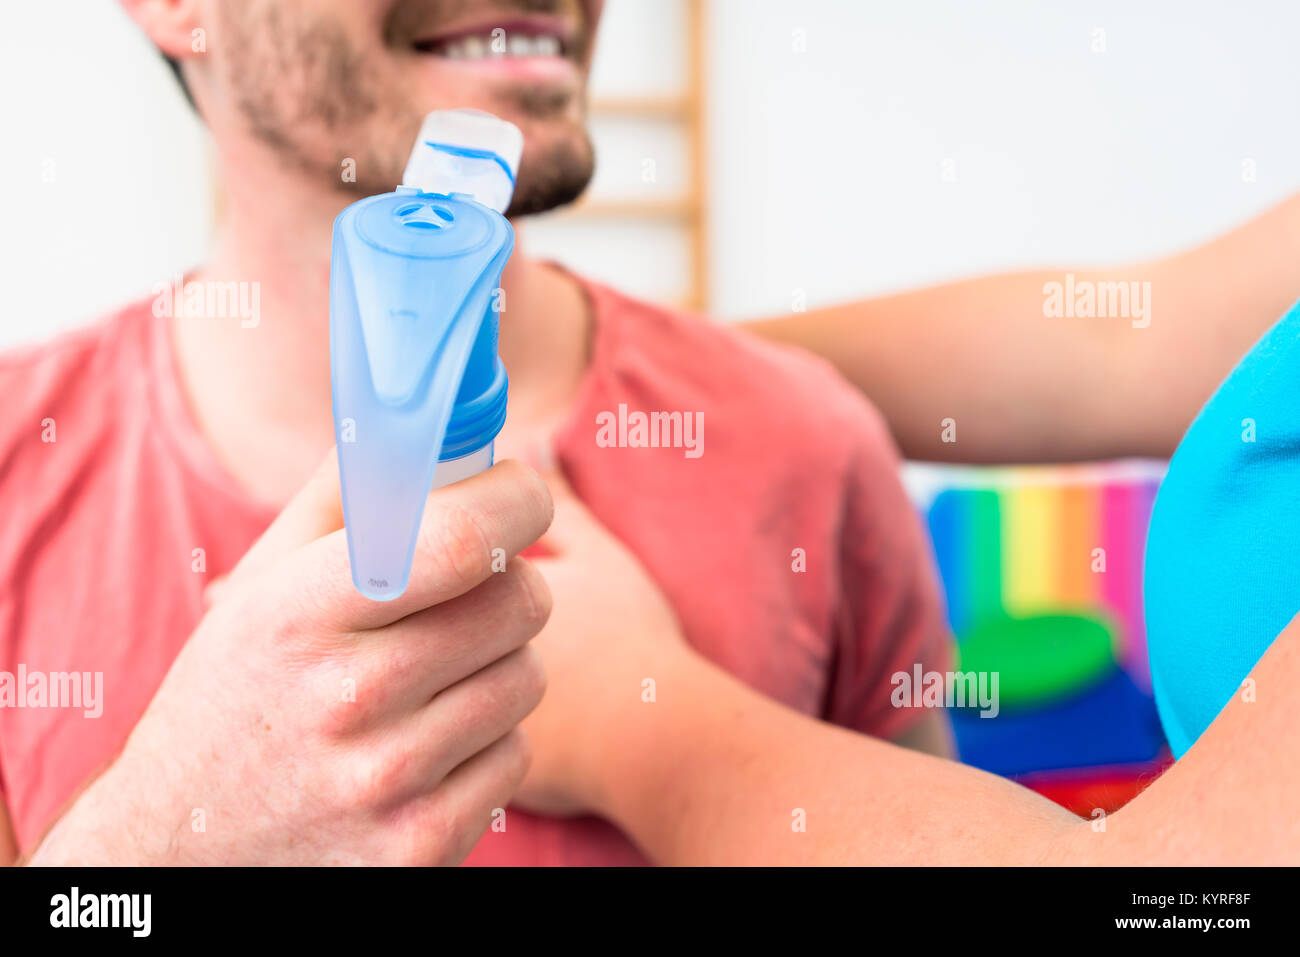 L'uomo prendendo la funzione polmonare test con boccaglio in mano Foto Stock